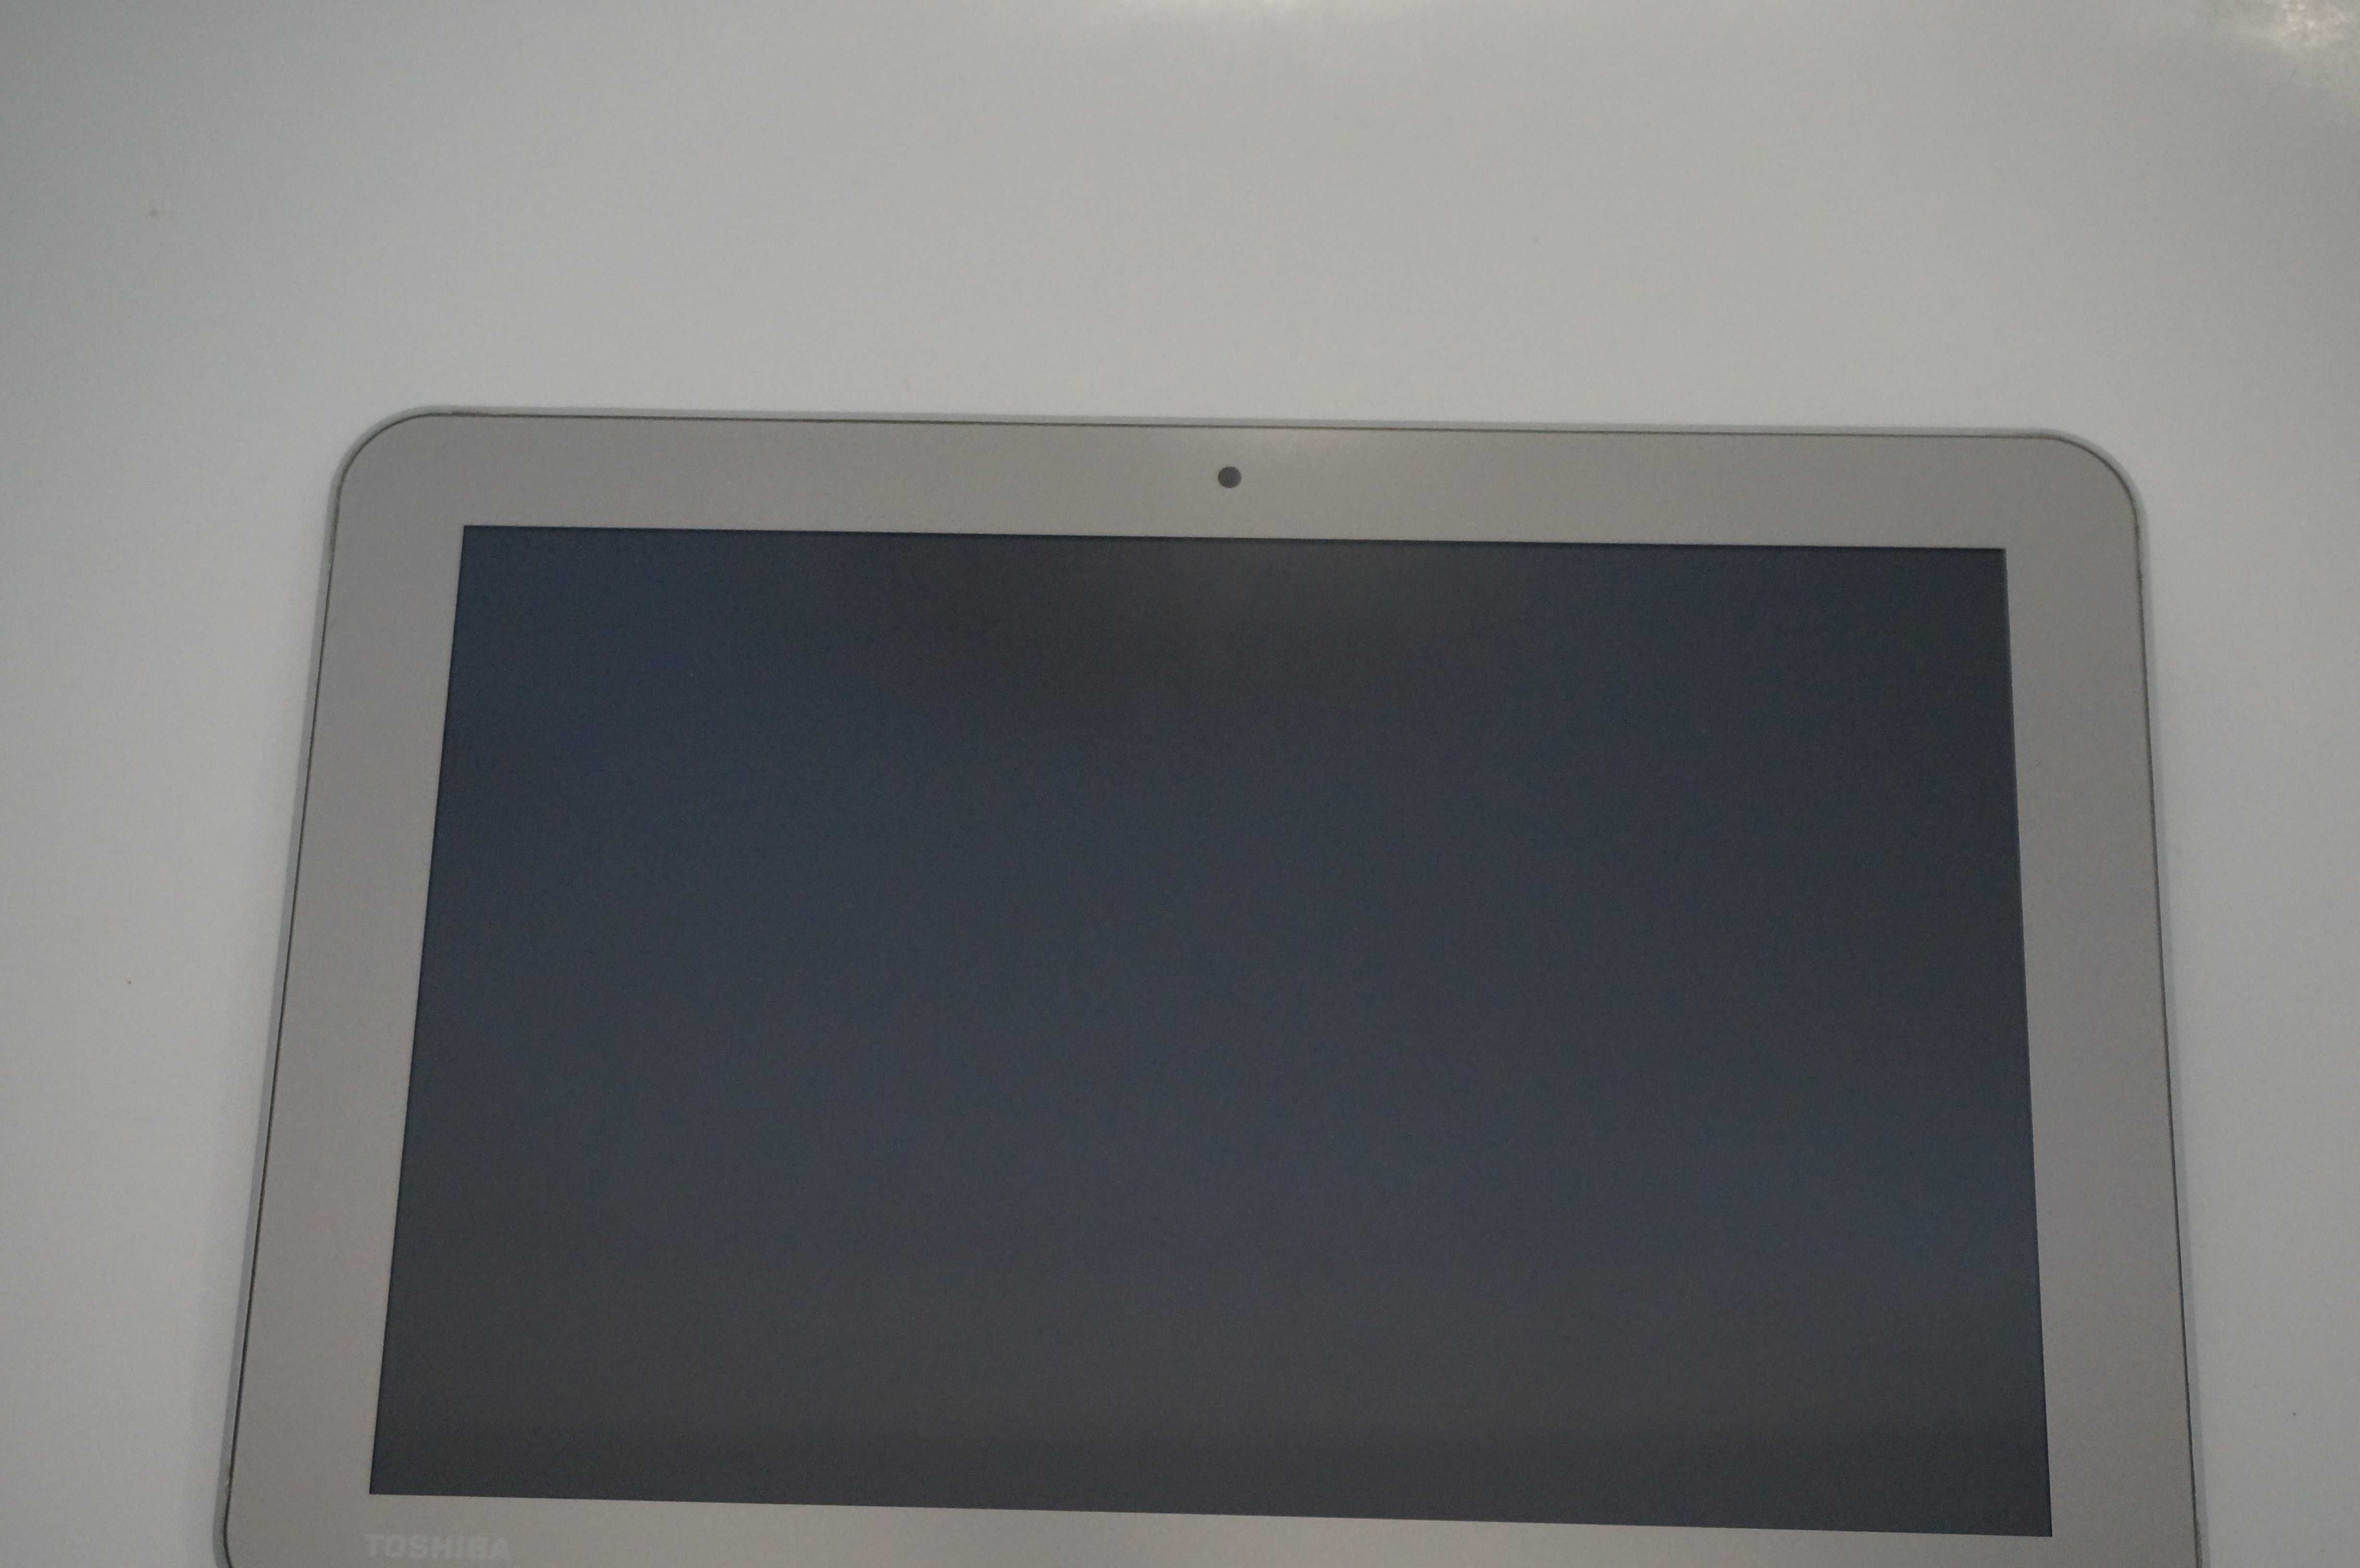 Peças para Tablet Toshiba WT10-A -- Ecrã LCD, Camera, Colunas